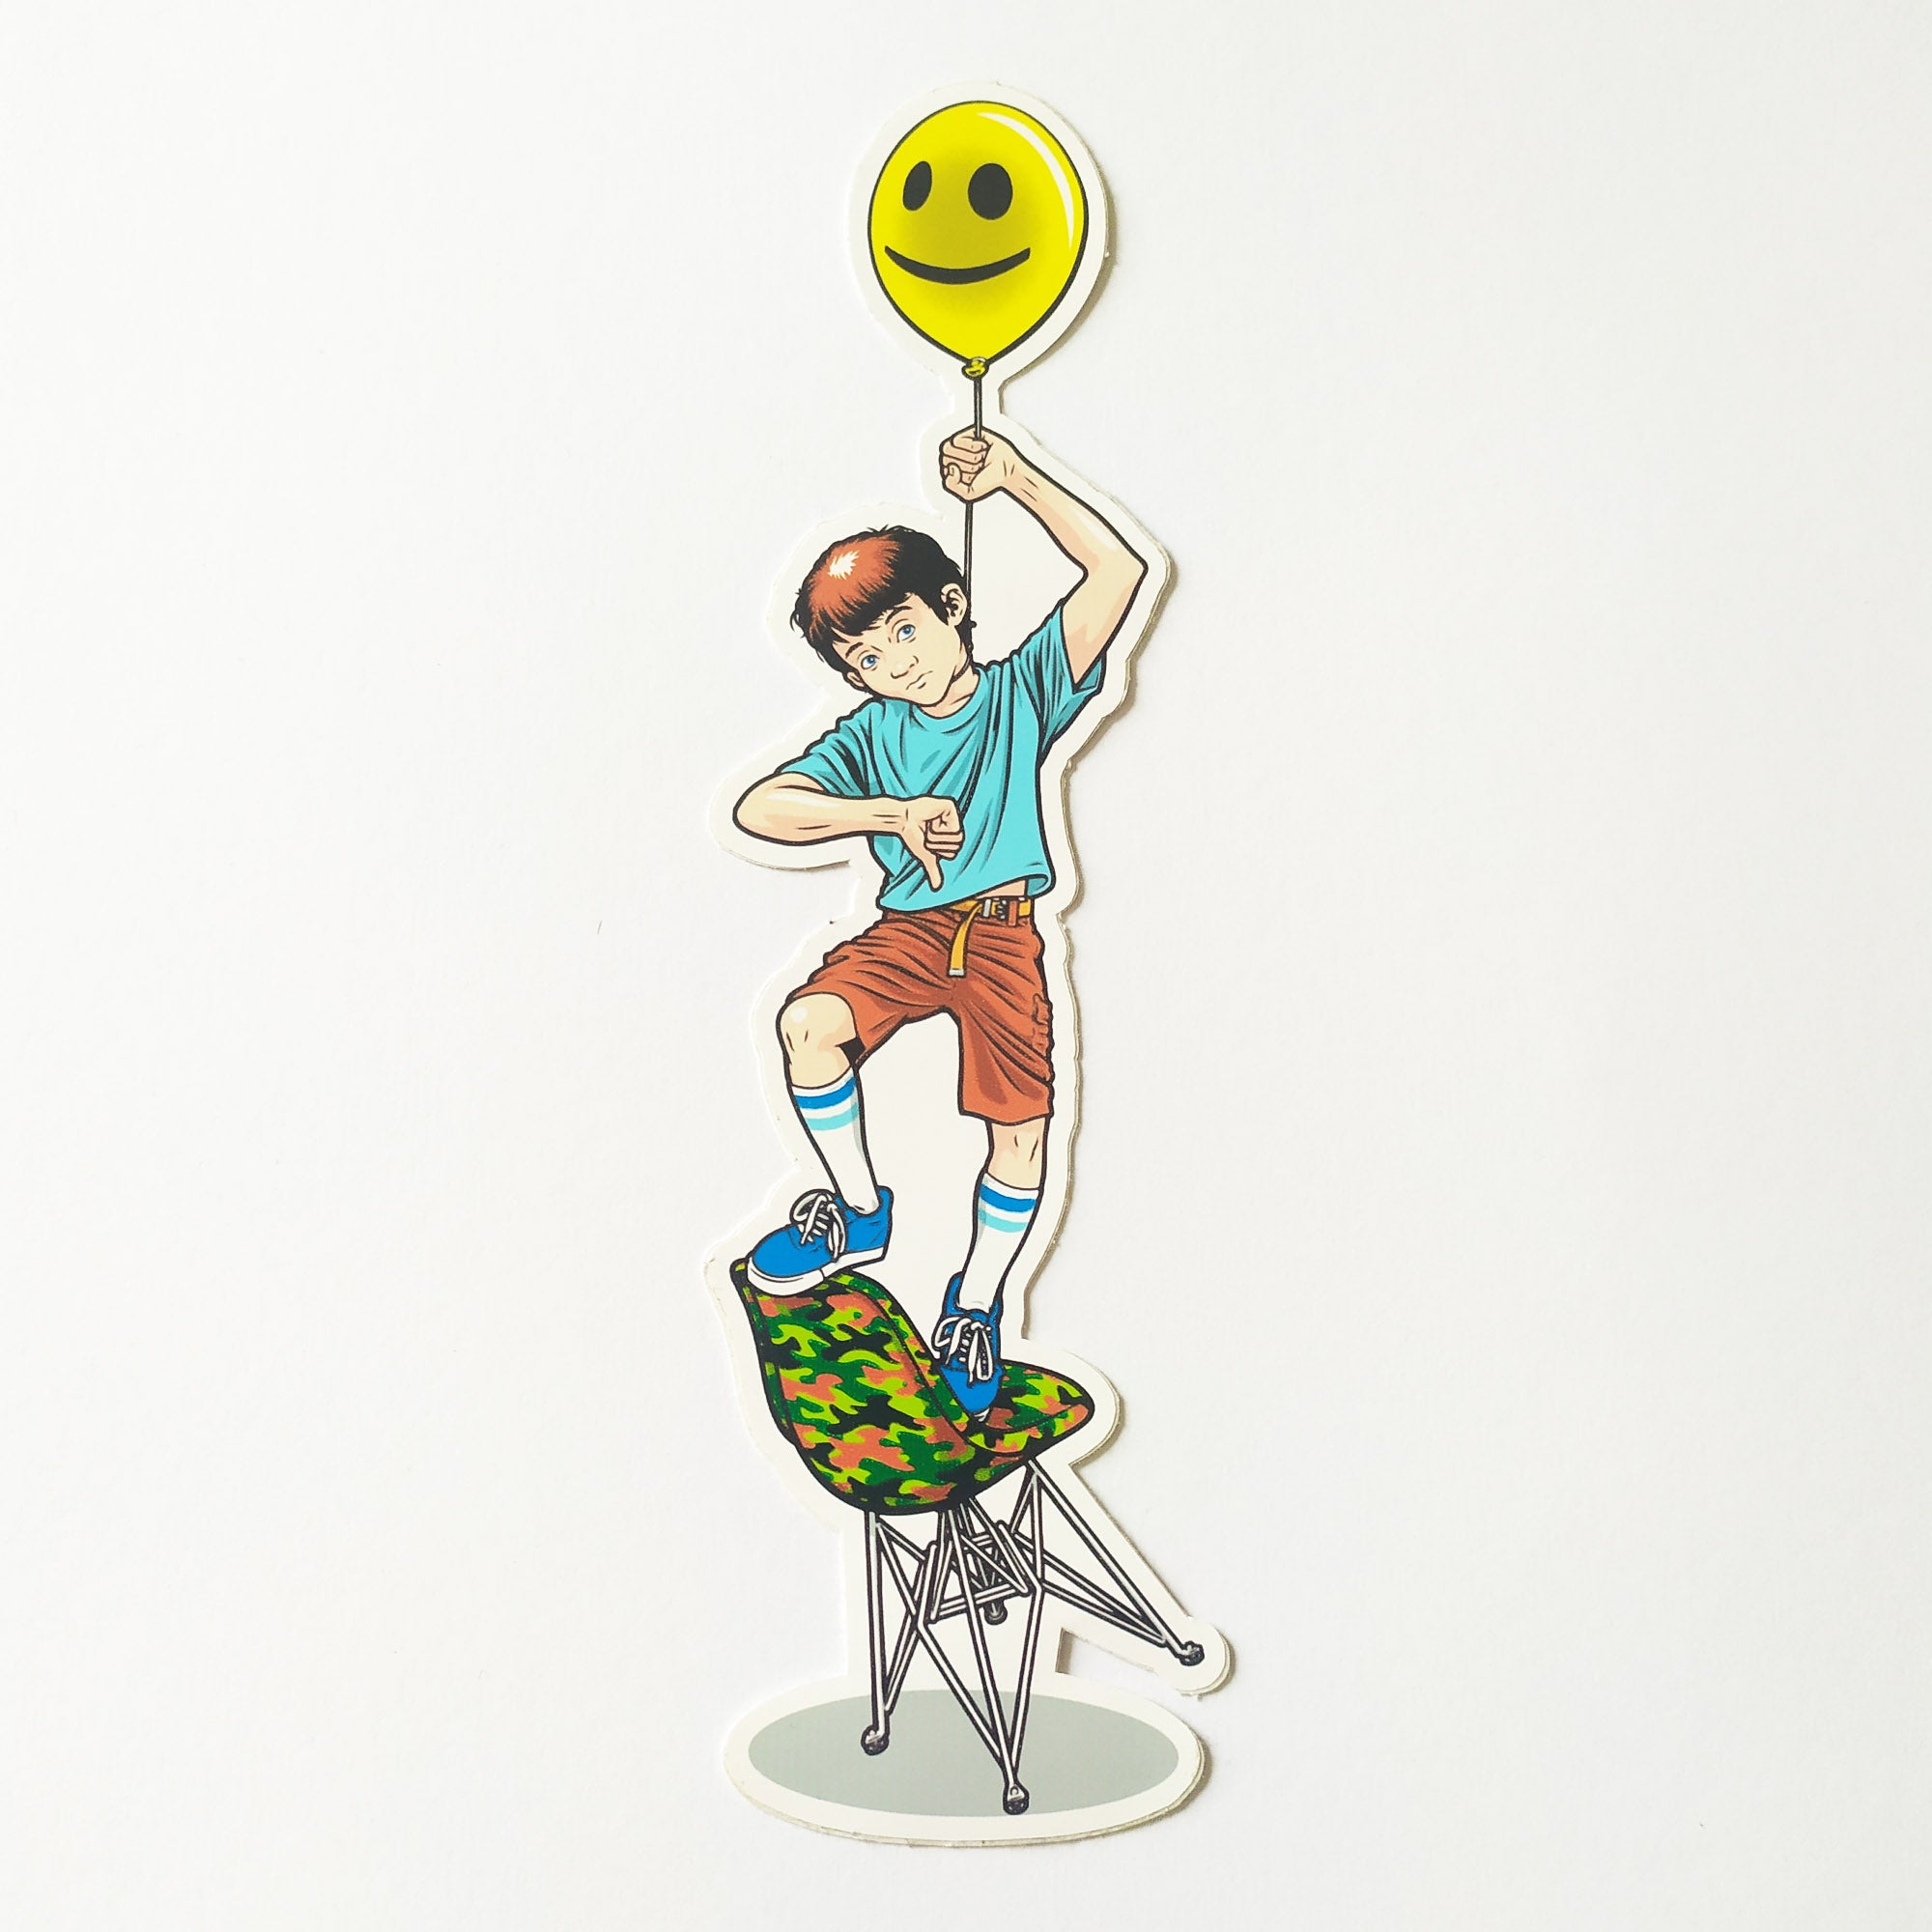 StrangeLove "Balloon Boy" Skateboard Sticker